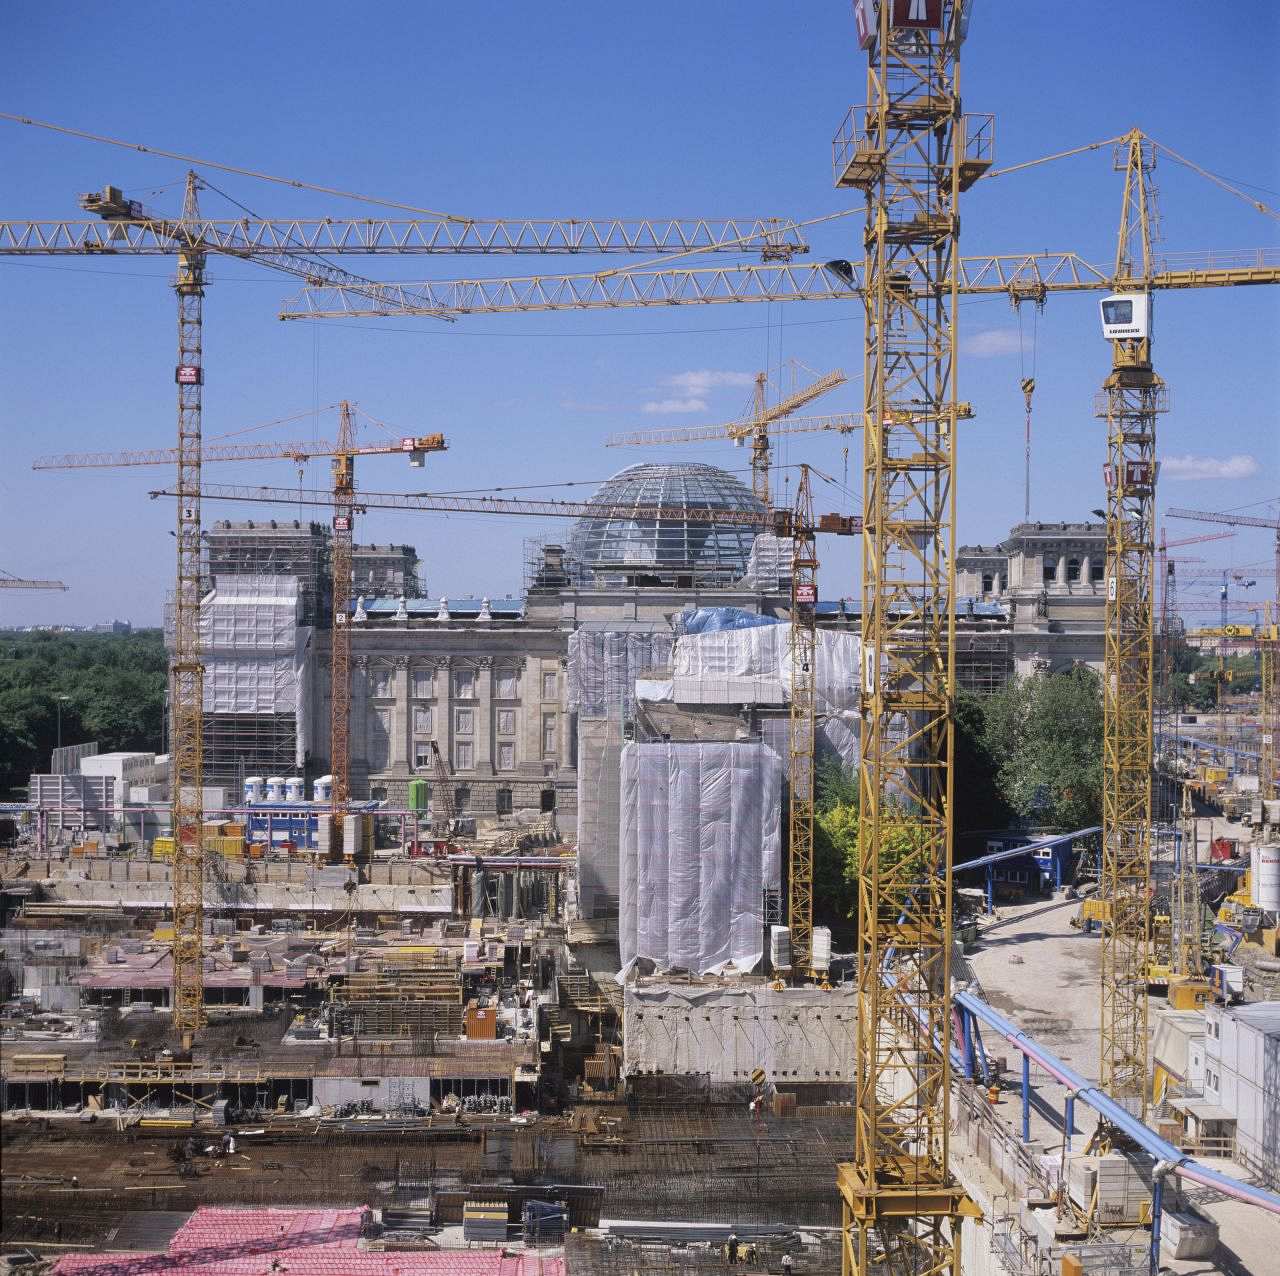 Fotografie einer Baustelle: Im Vordergrund zahlreiche hohe Baukräne, im Hintergrund ist der Reichstag in Berlin zu sehen, der teils mit Baugerüsten und Planen abgedeckt ist.